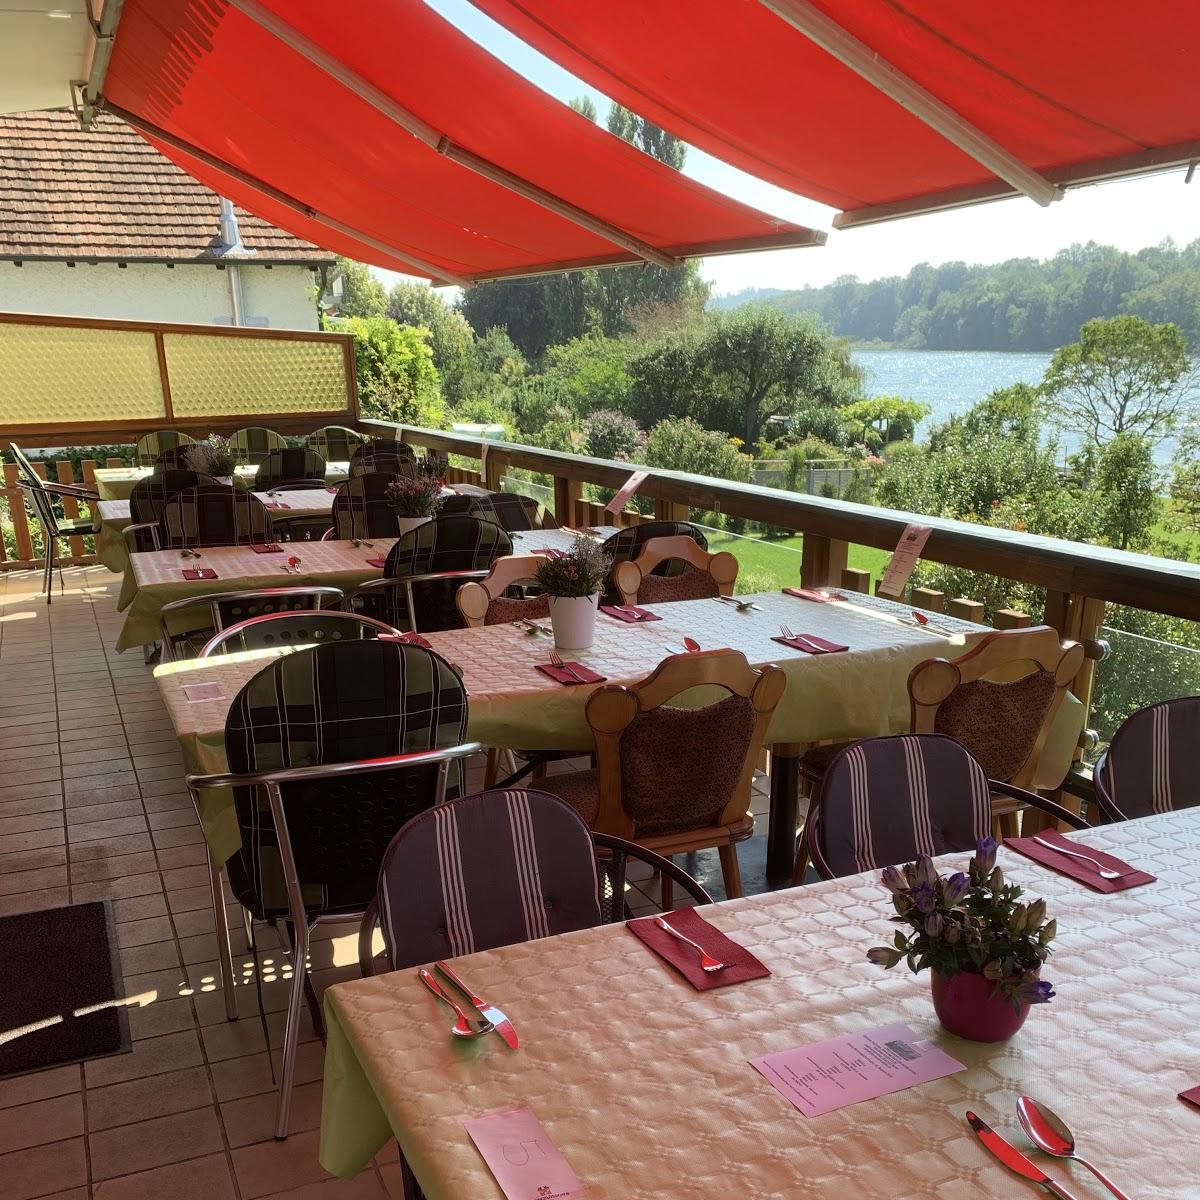 Restaurant "Cafe Restaurant Eder" in  Hochrhein